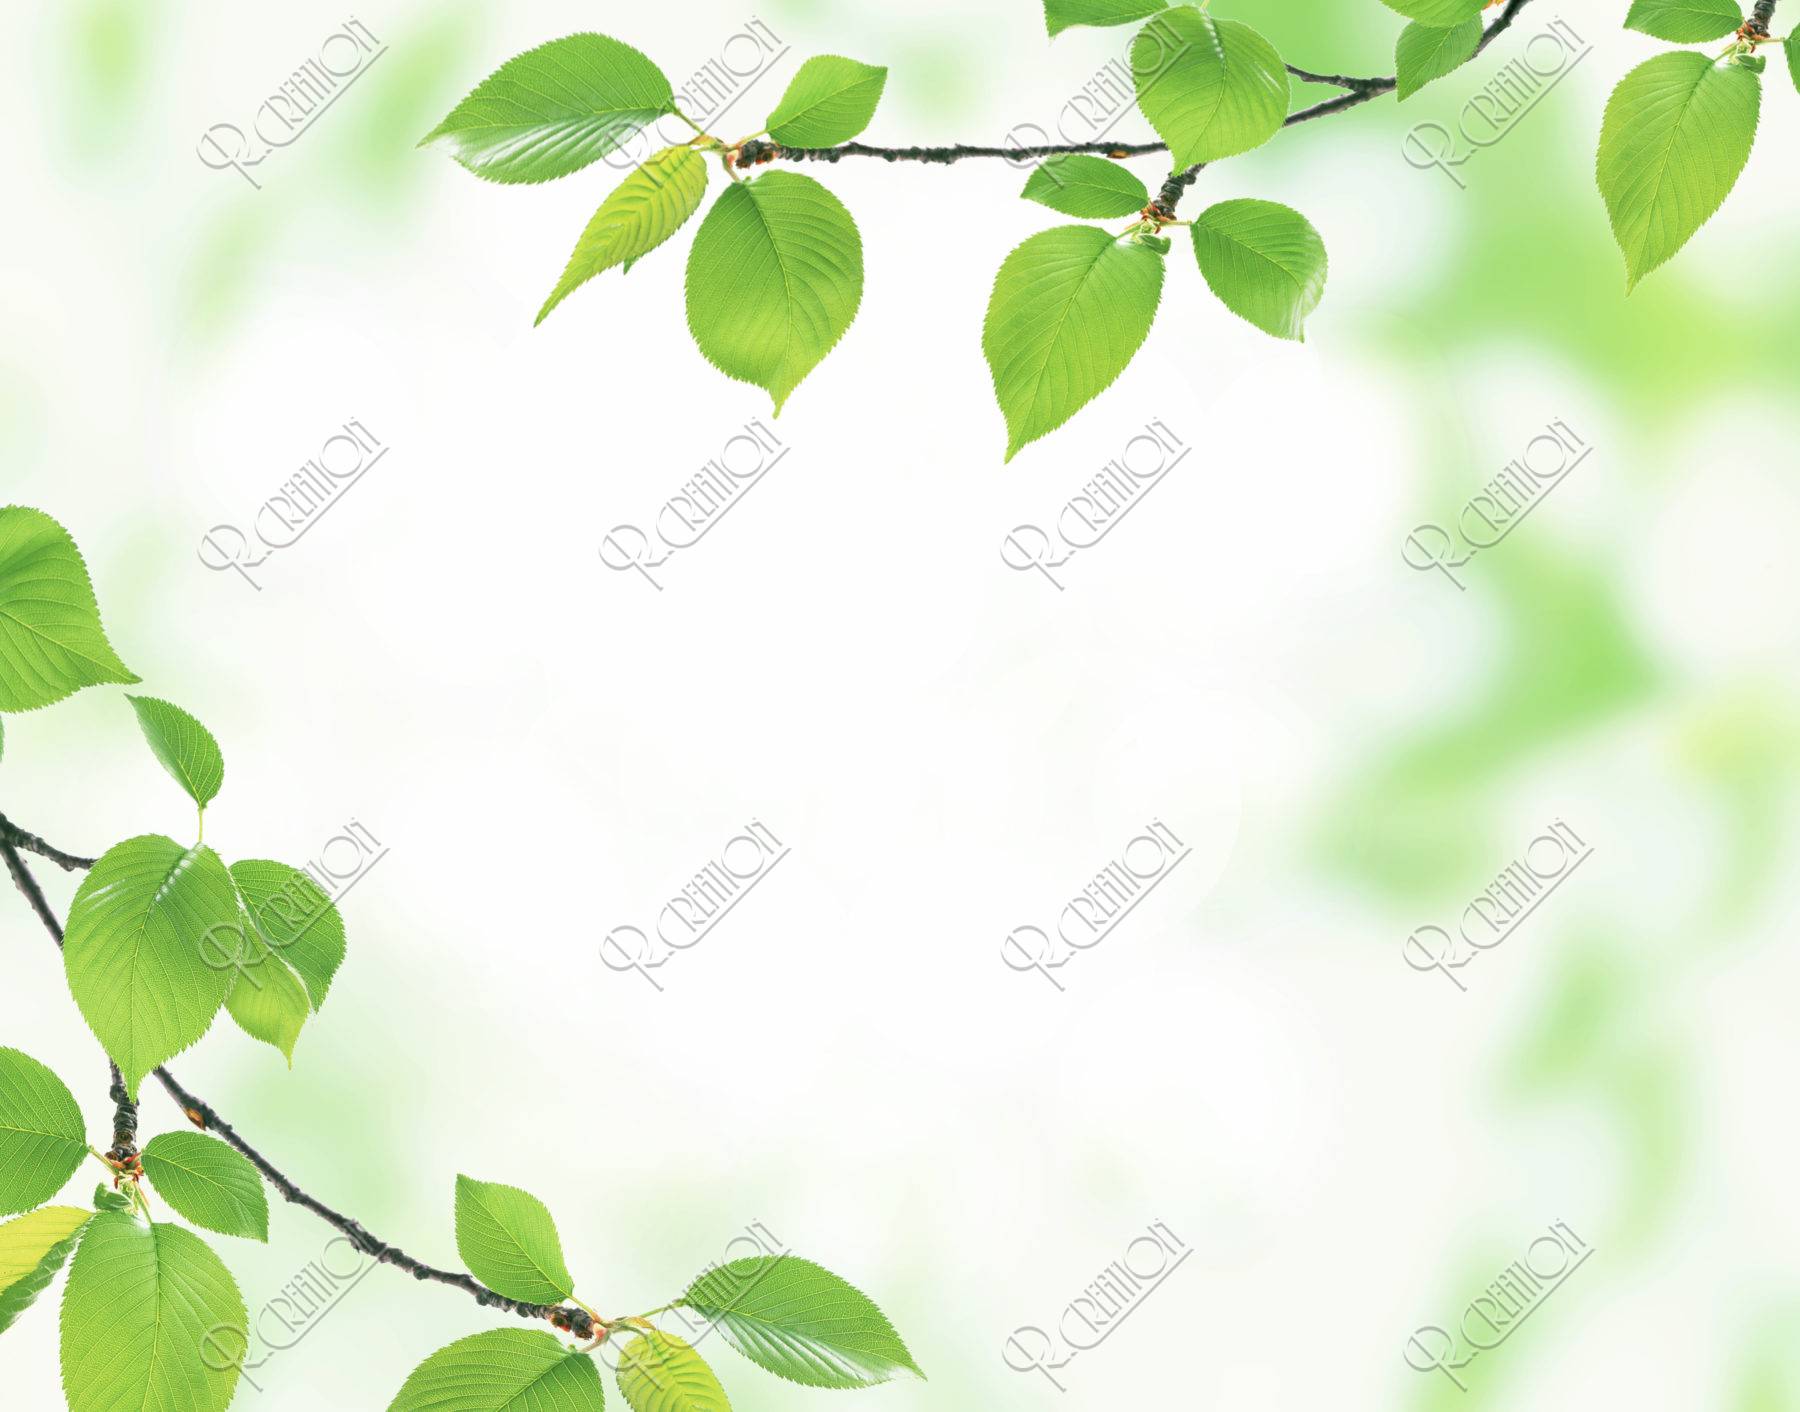 グリーン 桜の葉 新緑 合成 アップ イラスト Cg アールクリエーション